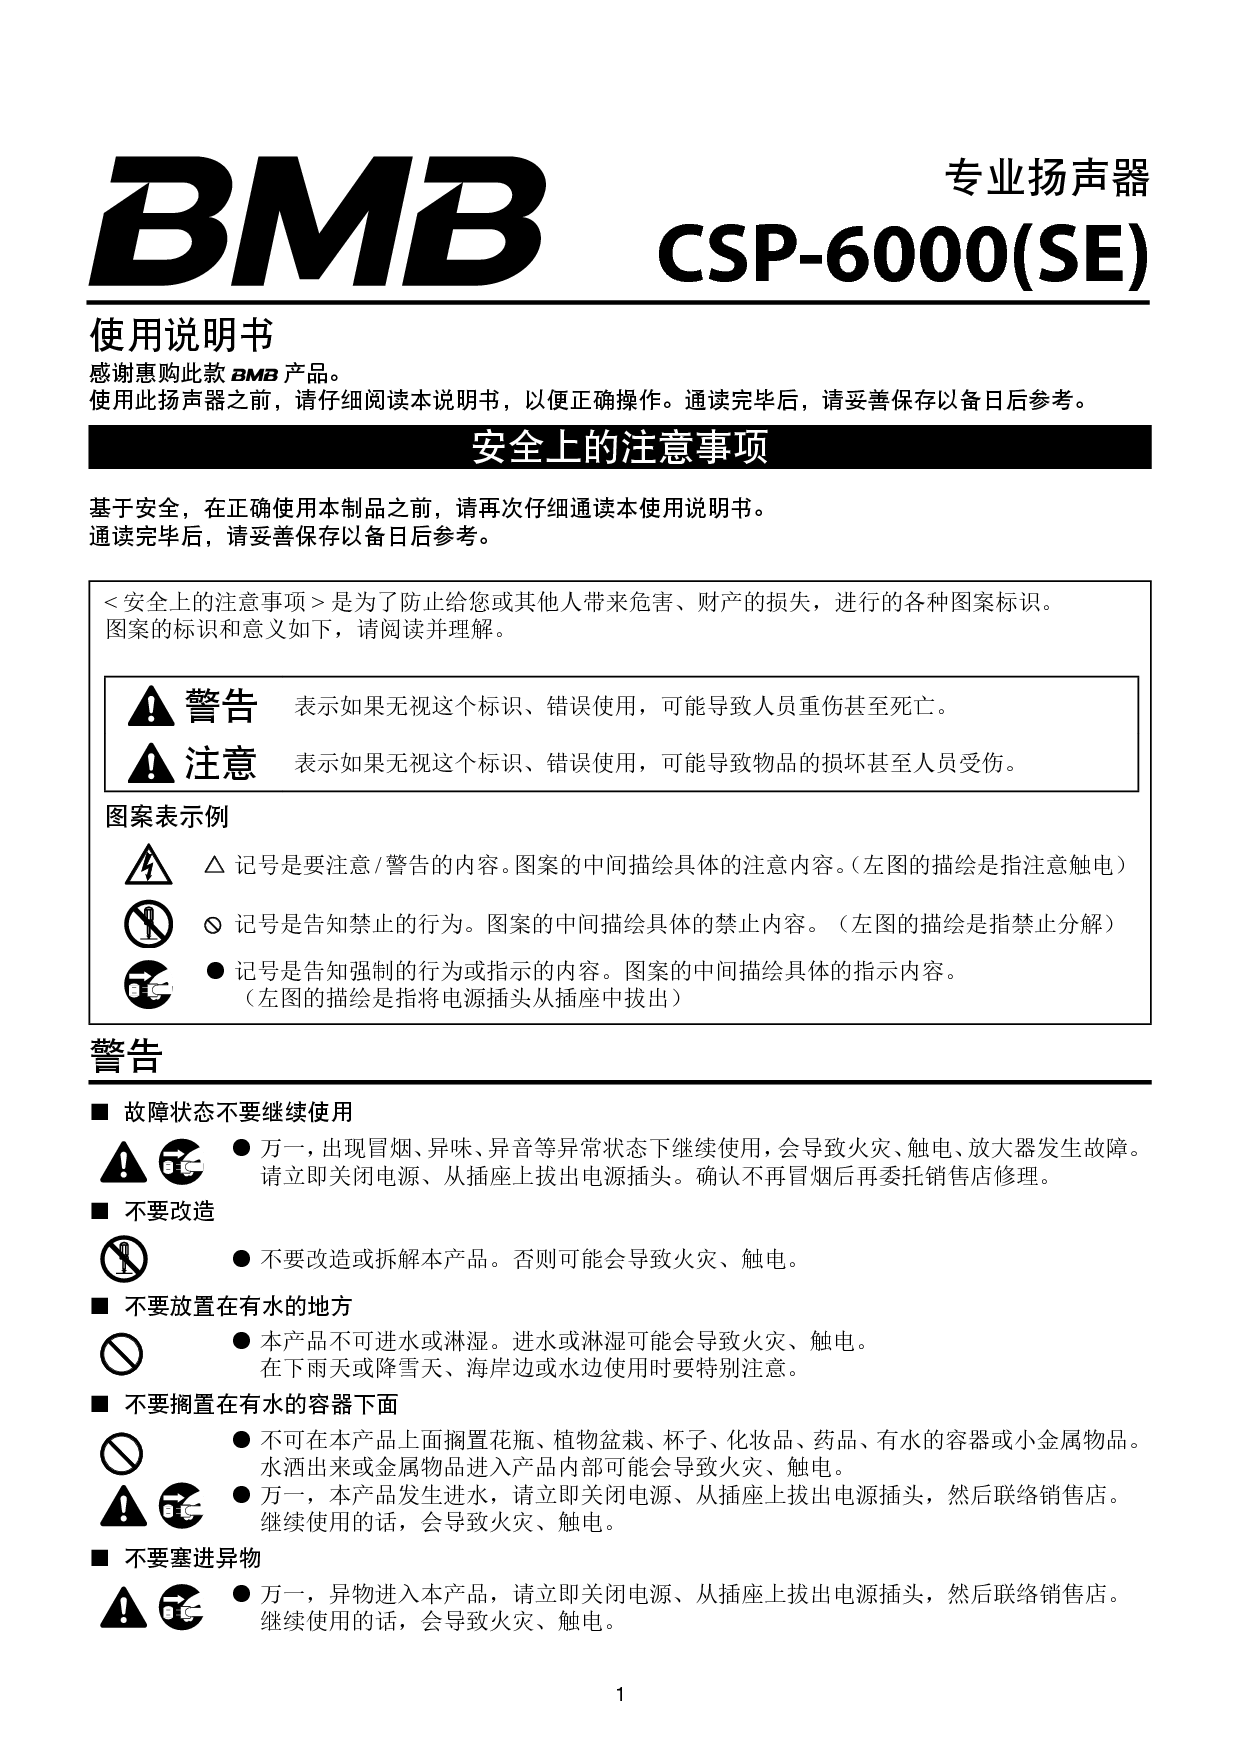 美音美 BMB CSP-6000(SE) 使用说明书 封面